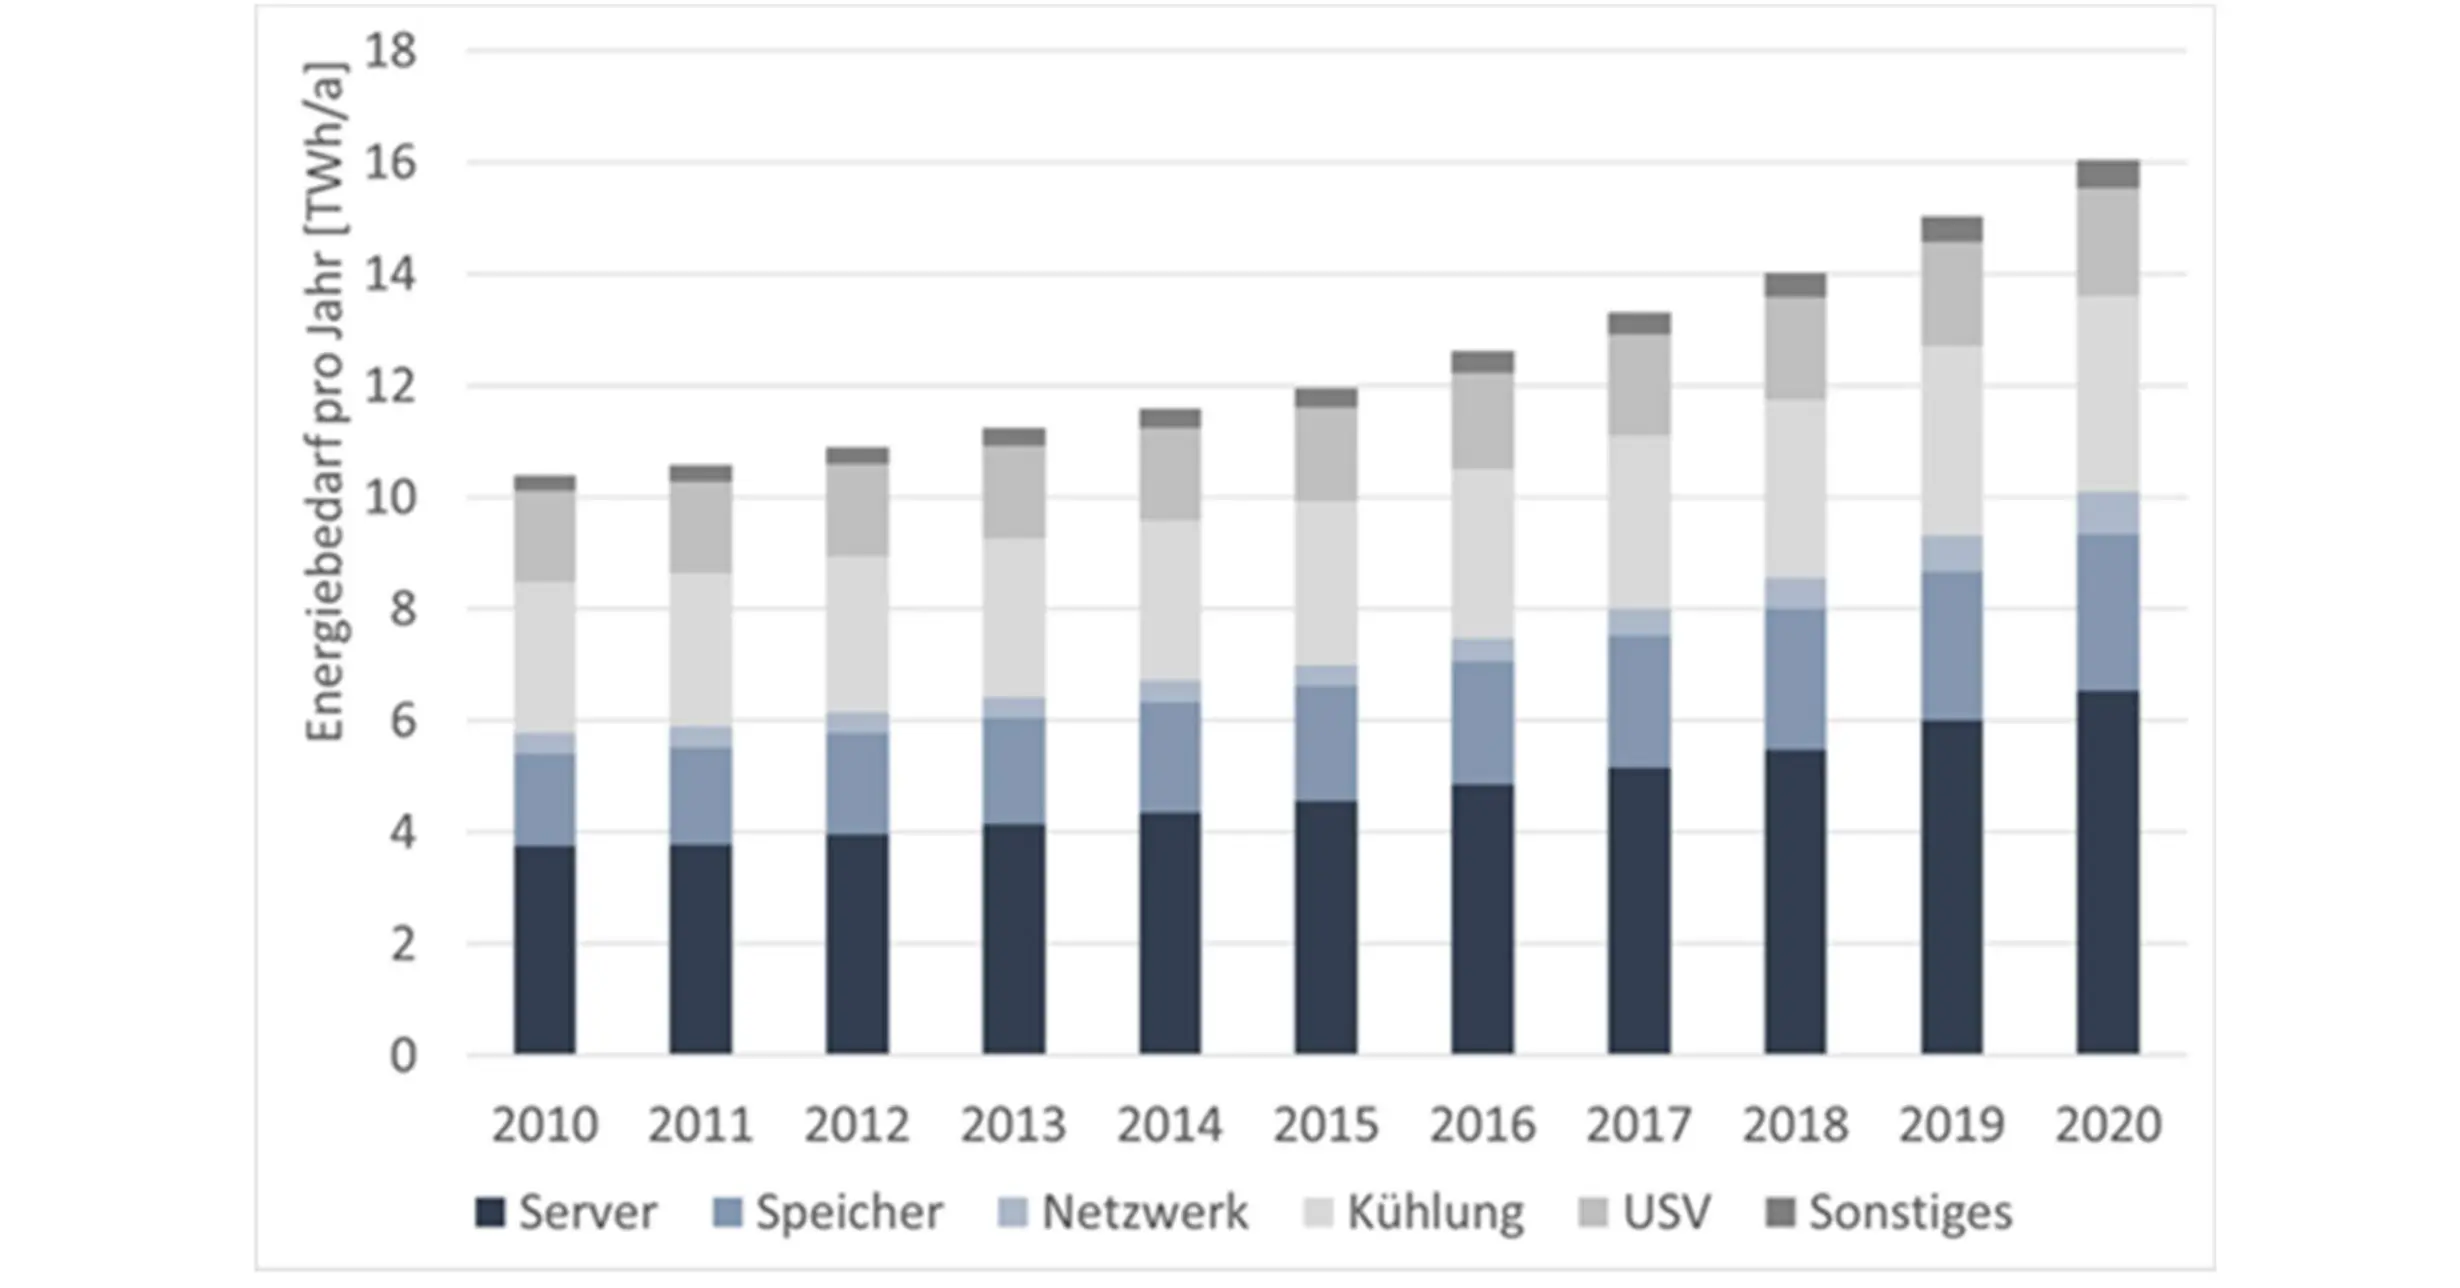 Energieverbrauch pro Jahr für Rechenzentren seit 2010